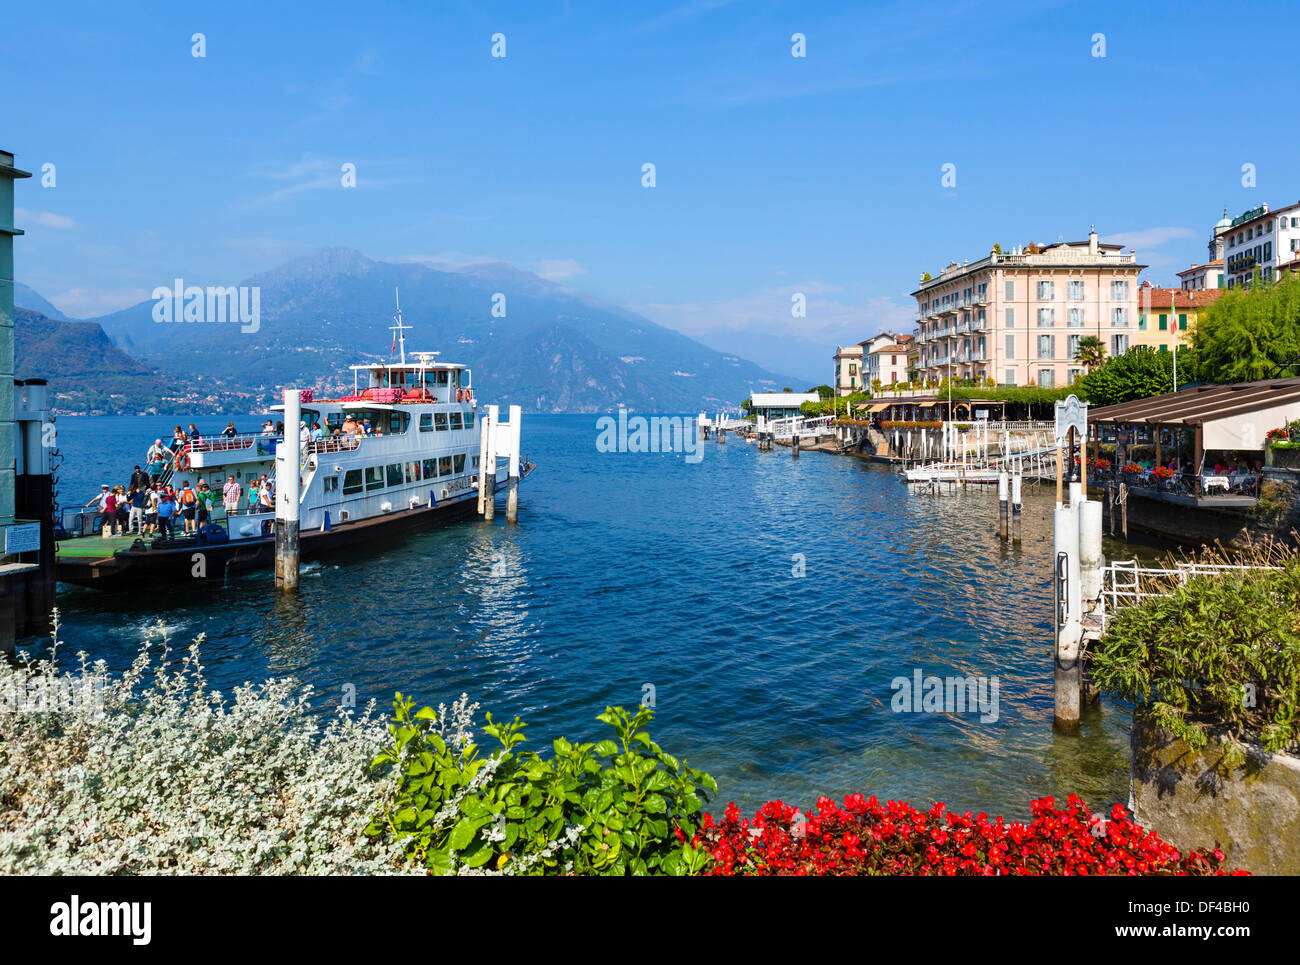 Comer See. Fähre am Dock mit historischen Hotel Genazzini entladen / Metropole am Wasser nach rechts, Bellagio, Lombardei, Italien Stockfoto